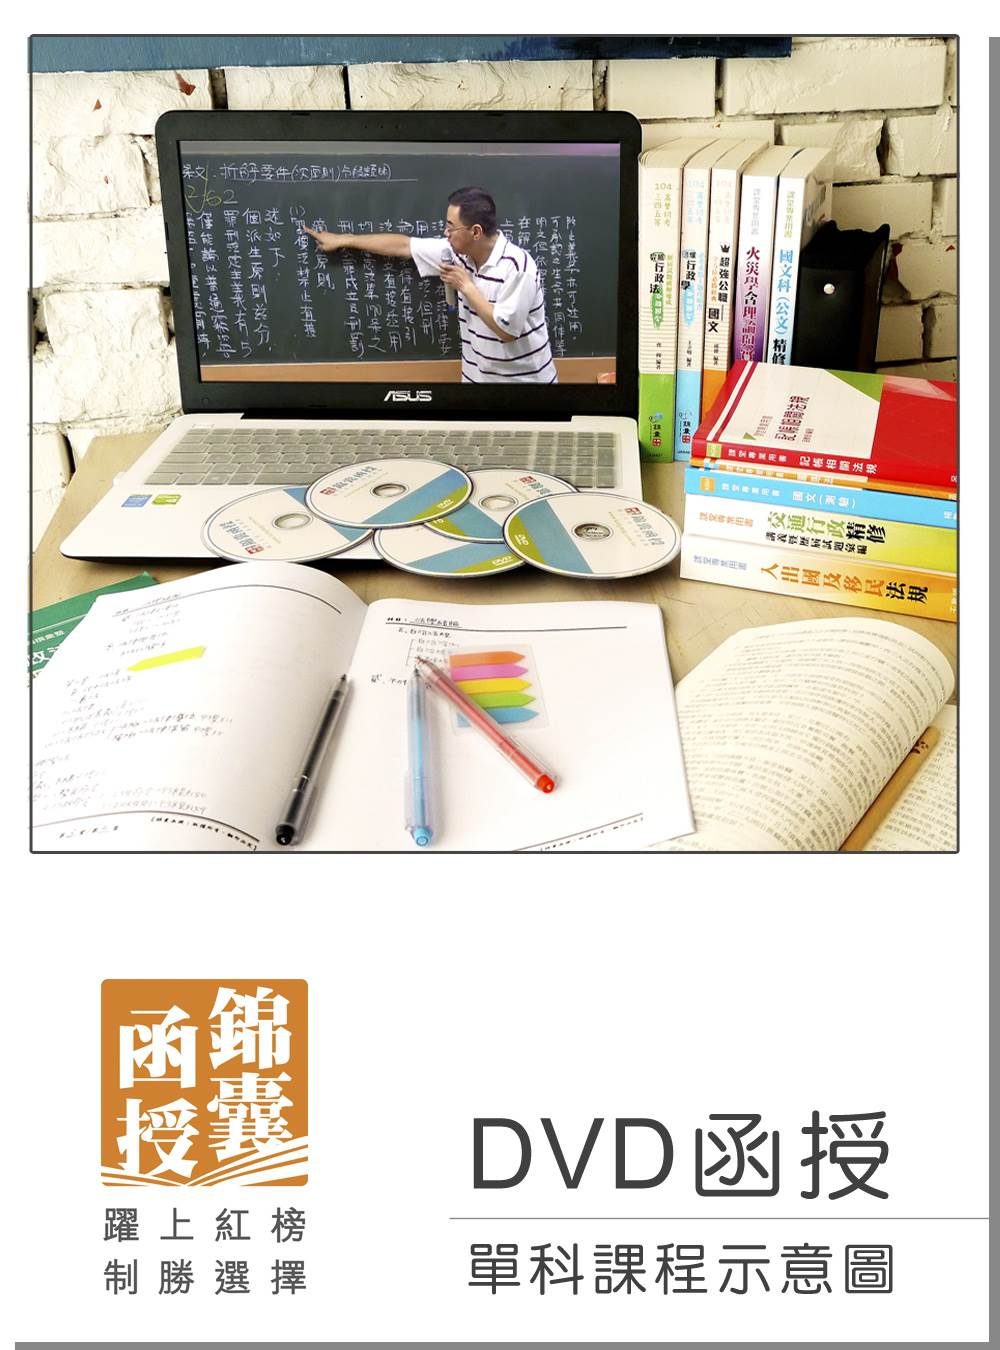 【DVD函授】程式設計：單科課程(105版)